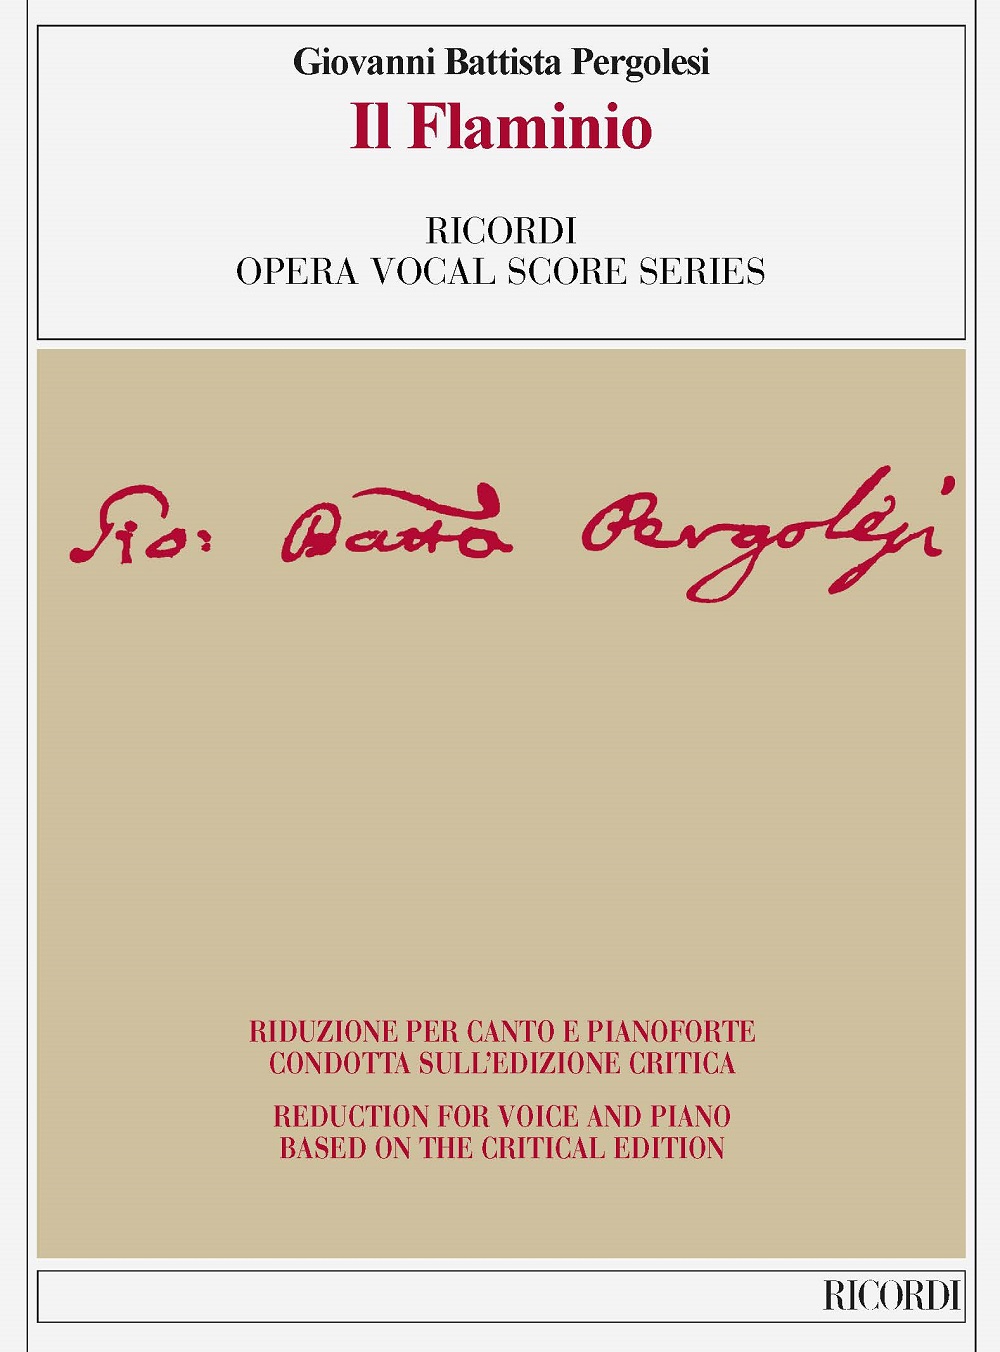 Giovanni Battista Pergolesi: Il Flaminio: Vocal: Vocal Score